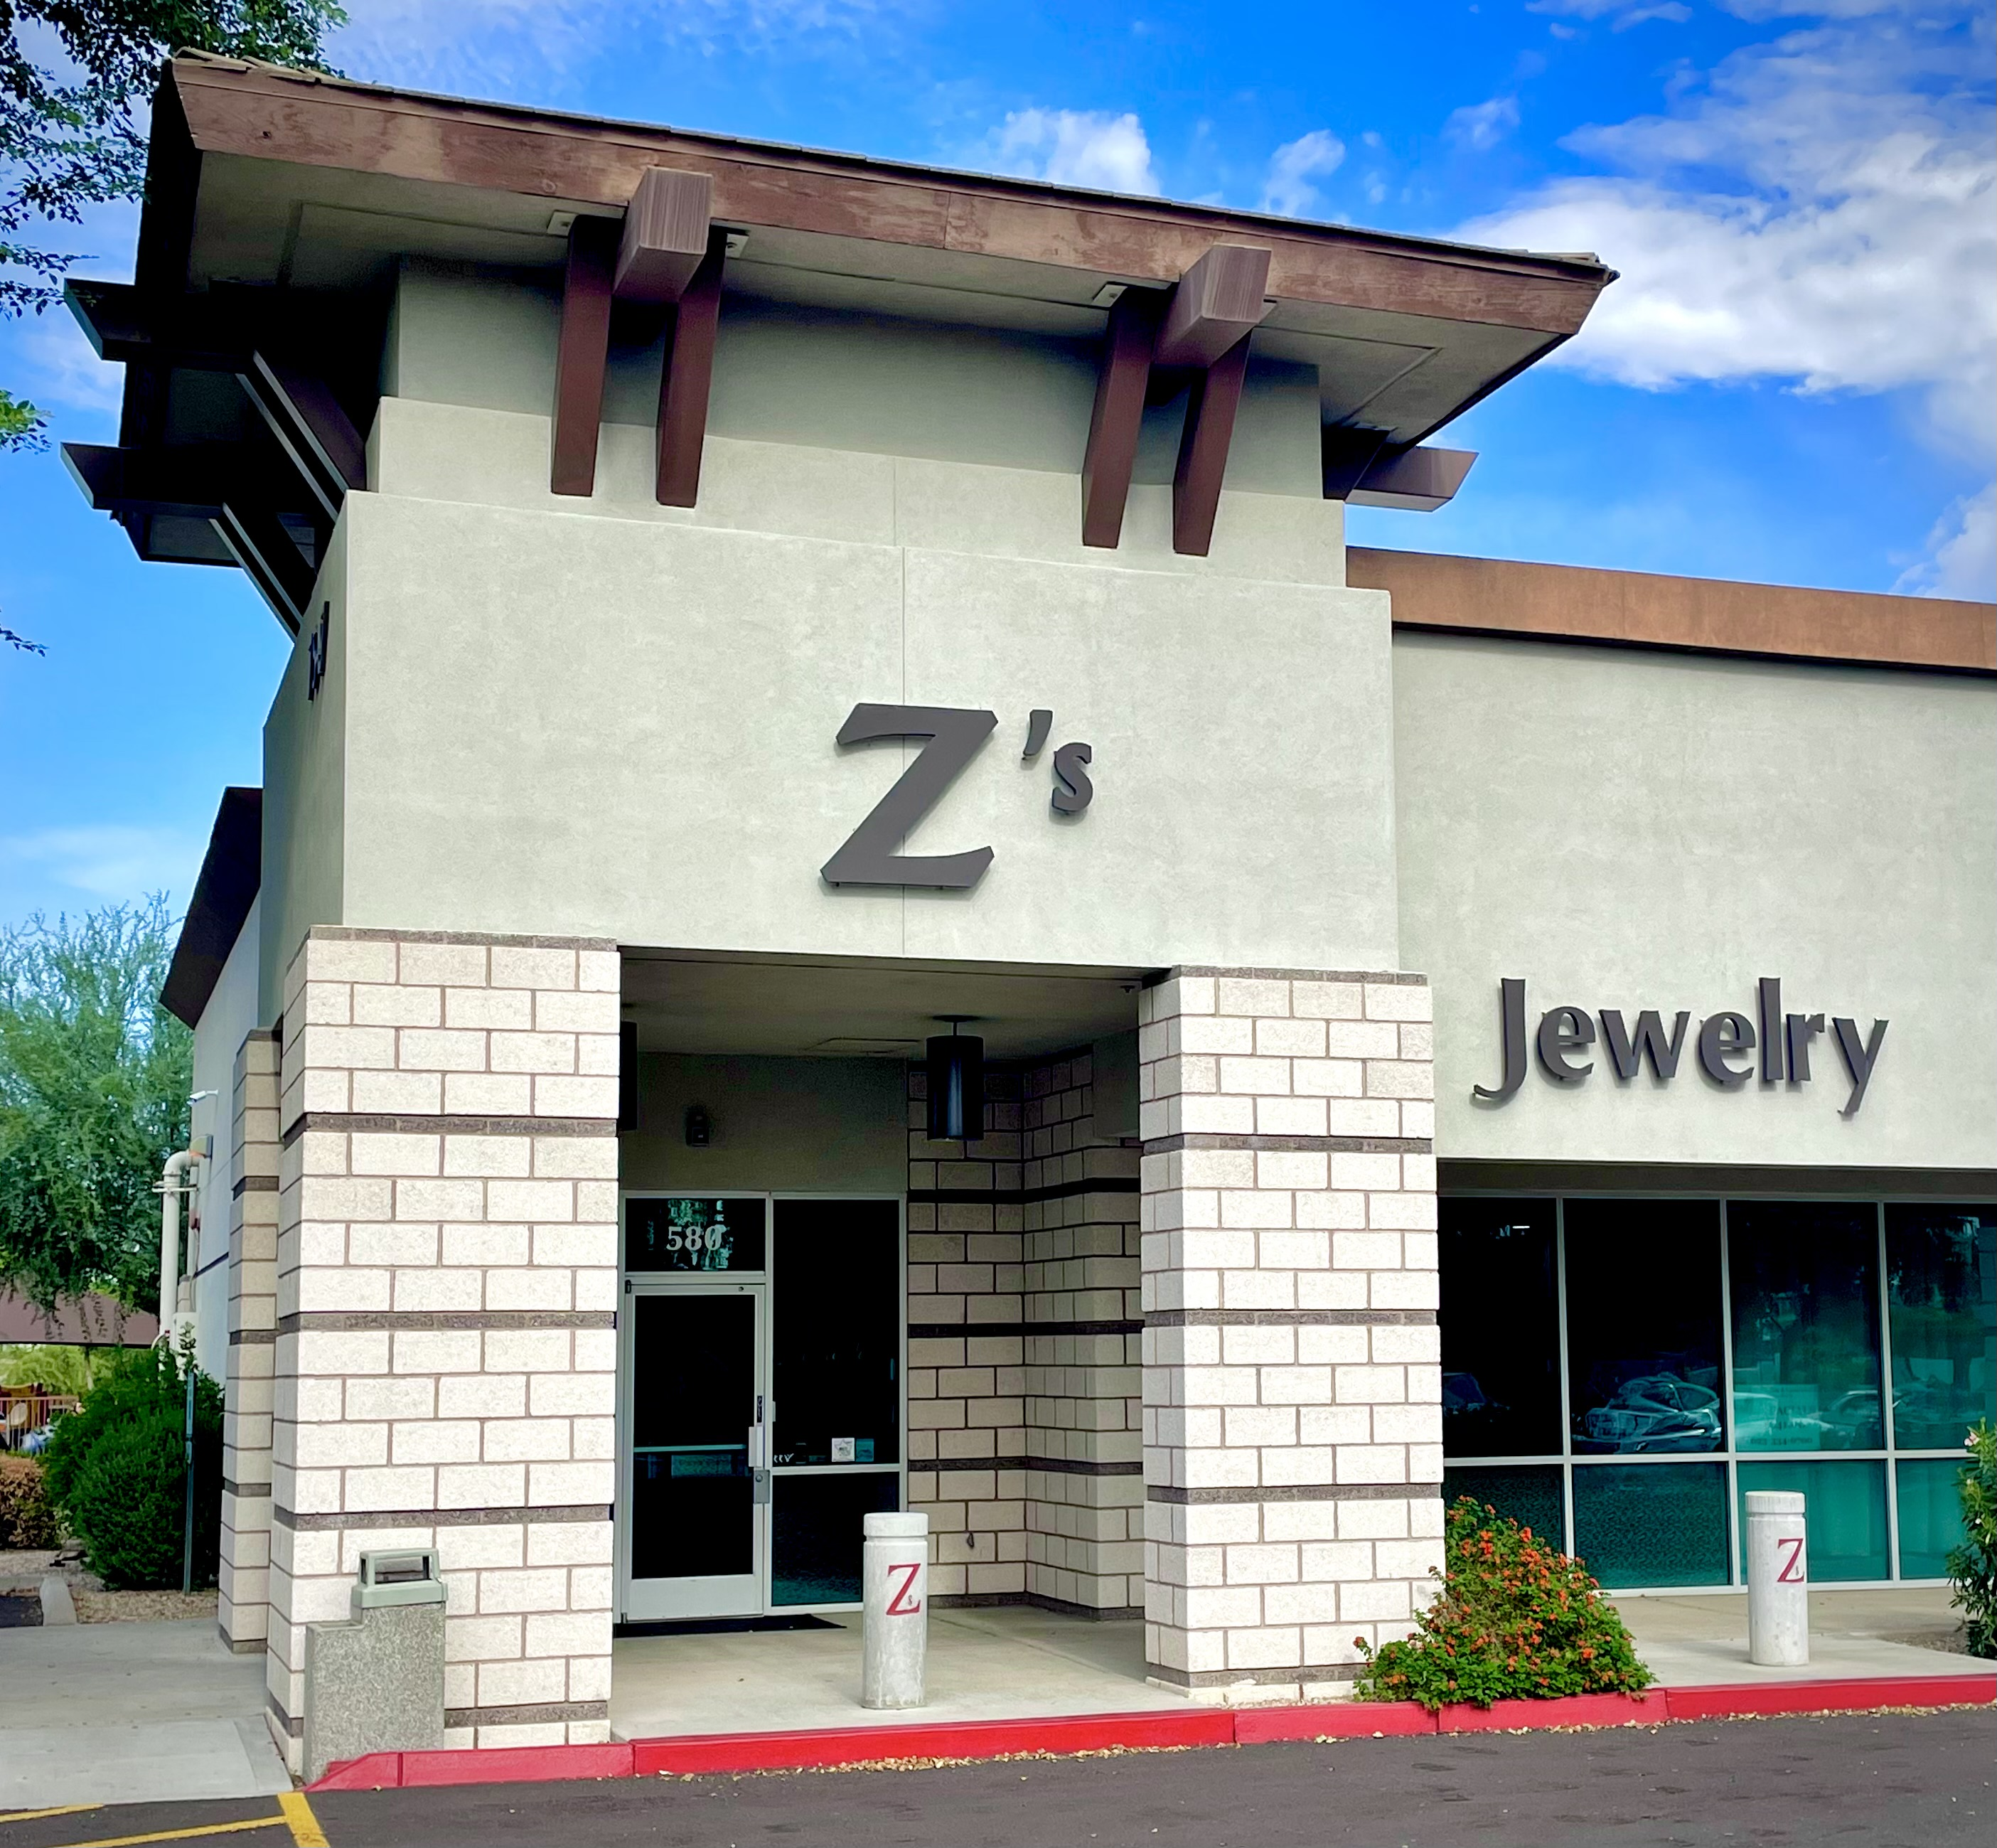 Location & Hours  Zs Fine Jewelry Peoria, AZ